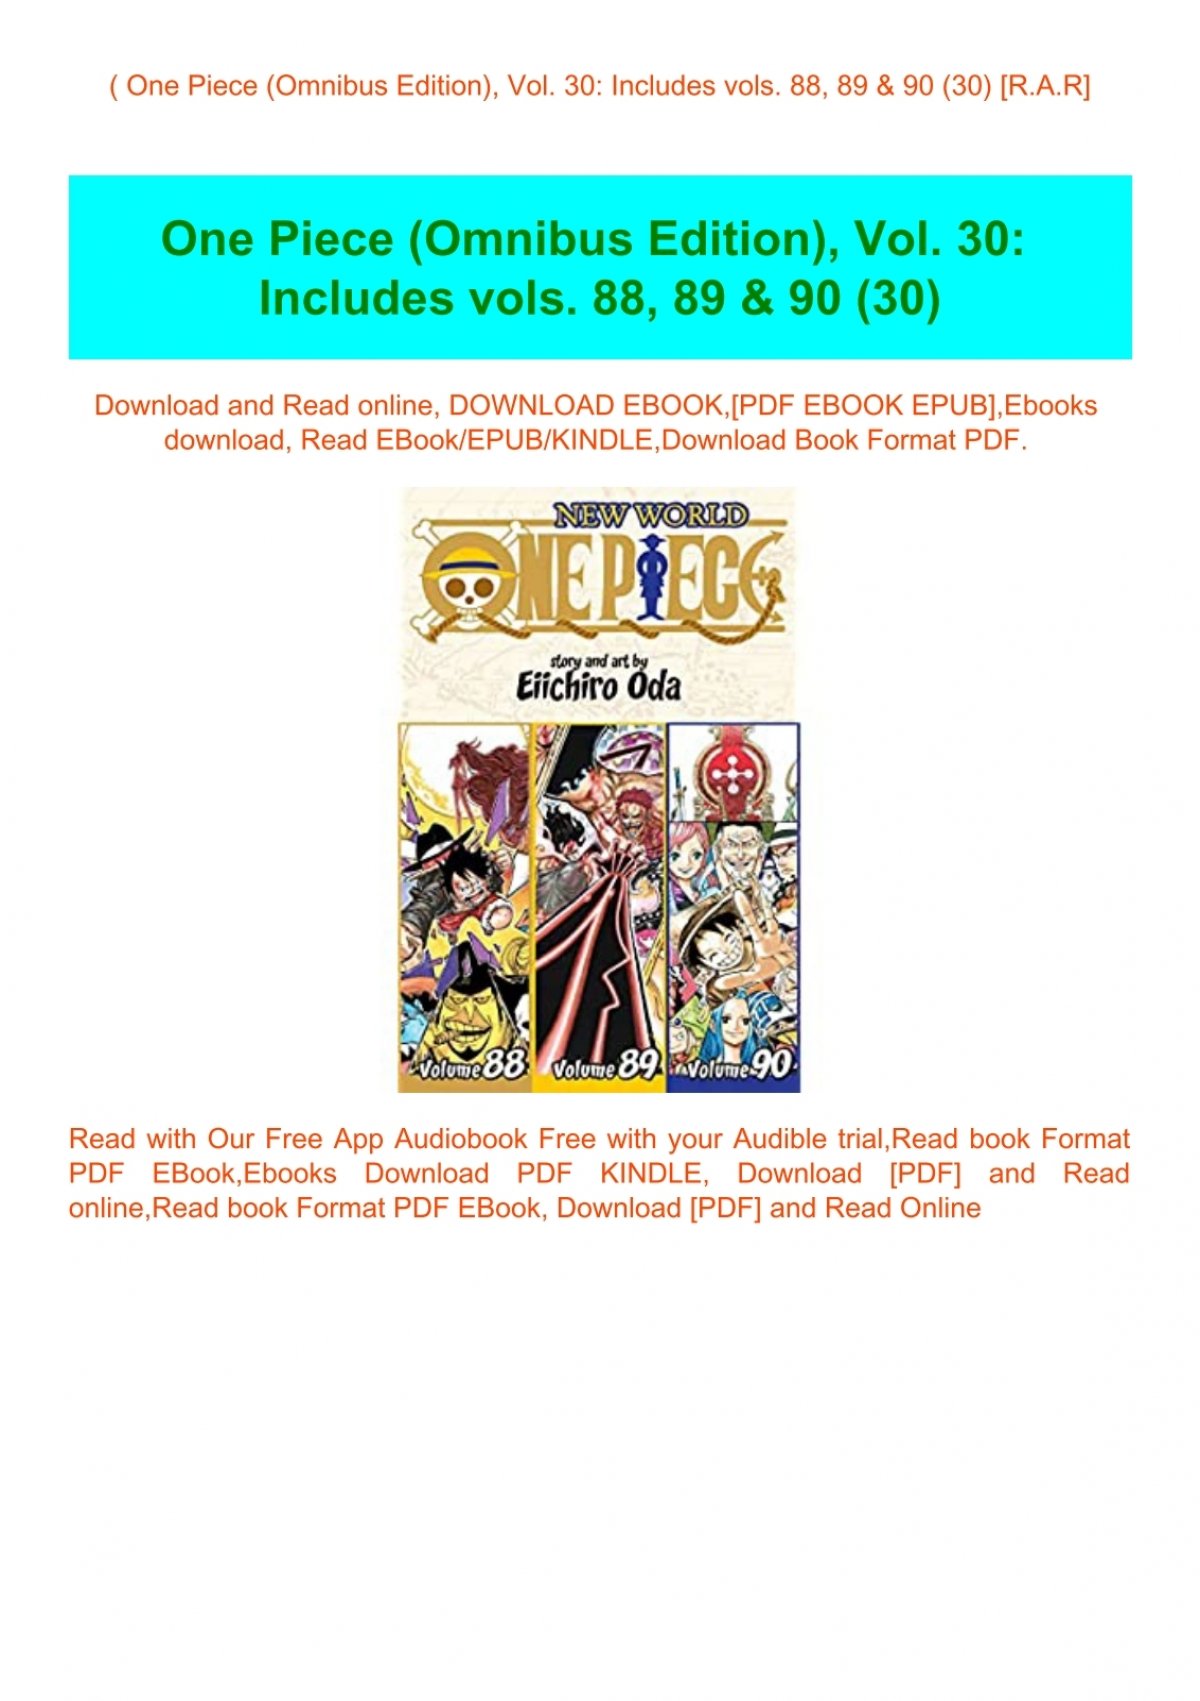 B O O K One Piece Omnibus Edition Vol 30 Includes Vols Amp Amp 90 30 R A R